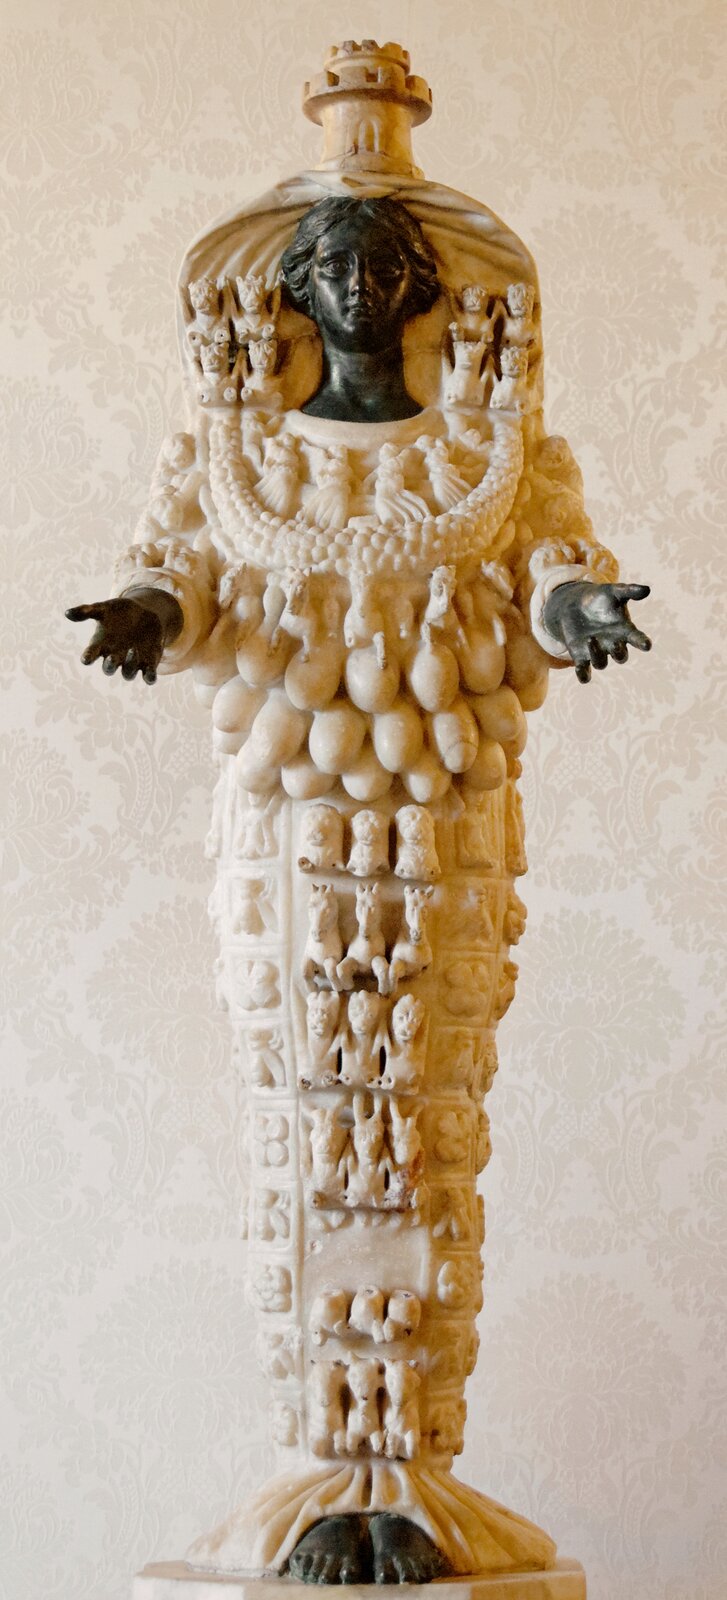 Ilustracja przedstawia rzeźbę Artemidy z Efezu. Głowa, ręce oraz stopy są w kolorze czarnym. Ubrana jest jakby w białą suknię, na której znajdują się małe rzeźby zwierząt. Kobieta jest przestawiona z wieloma piersiami, trzy rzędy piersi umieszczone zostały w dolnej części korpusu.